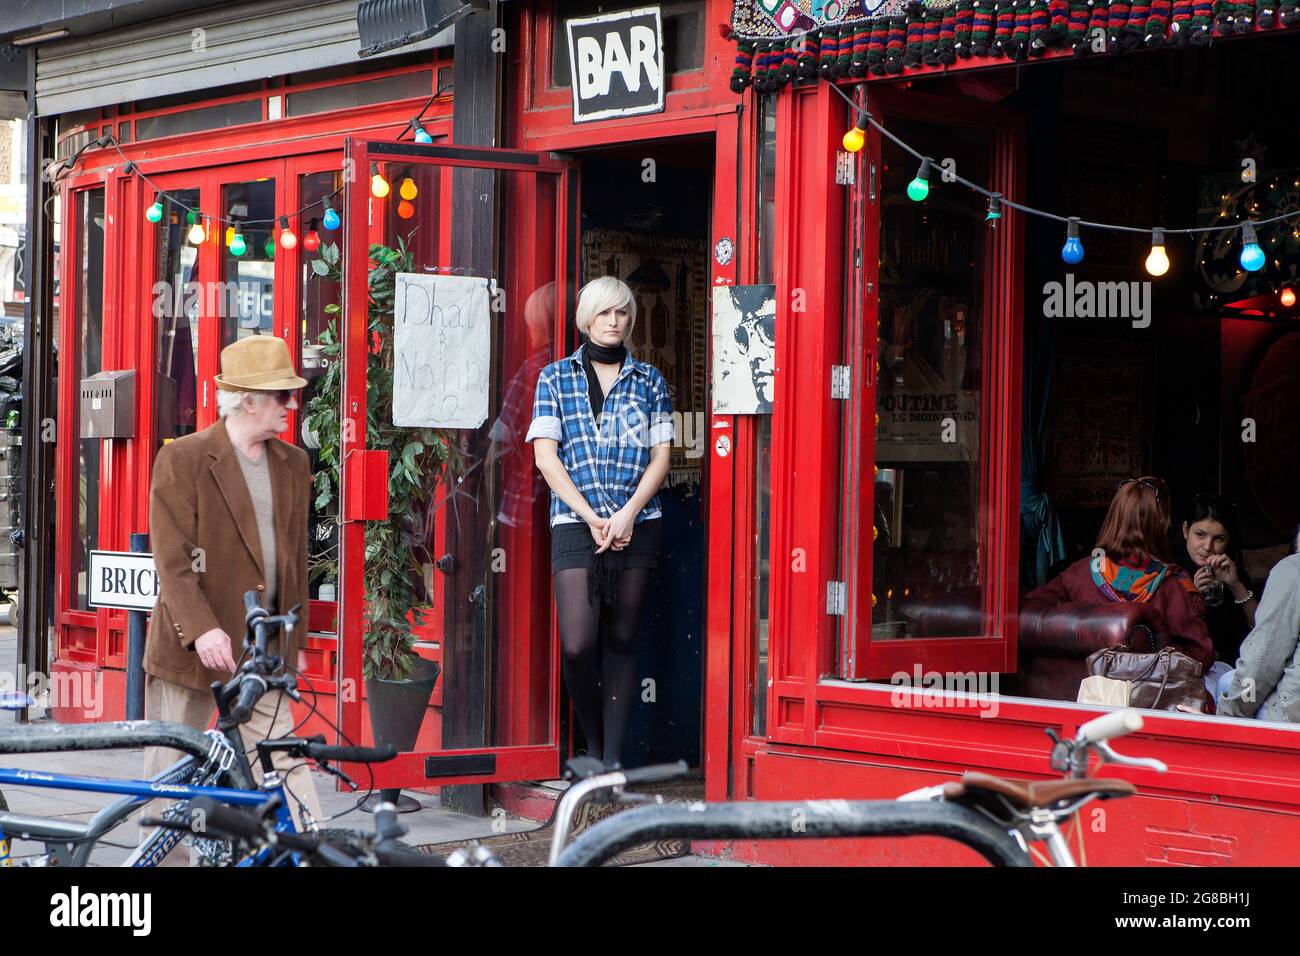 Londres, Royaume-Uni - novembre 2019, UNE fille blonde avec une coupe courte dans une chemise à carreaux et une jupe courte se tient dans la porte du bar, regarde la rade Banque D'Images